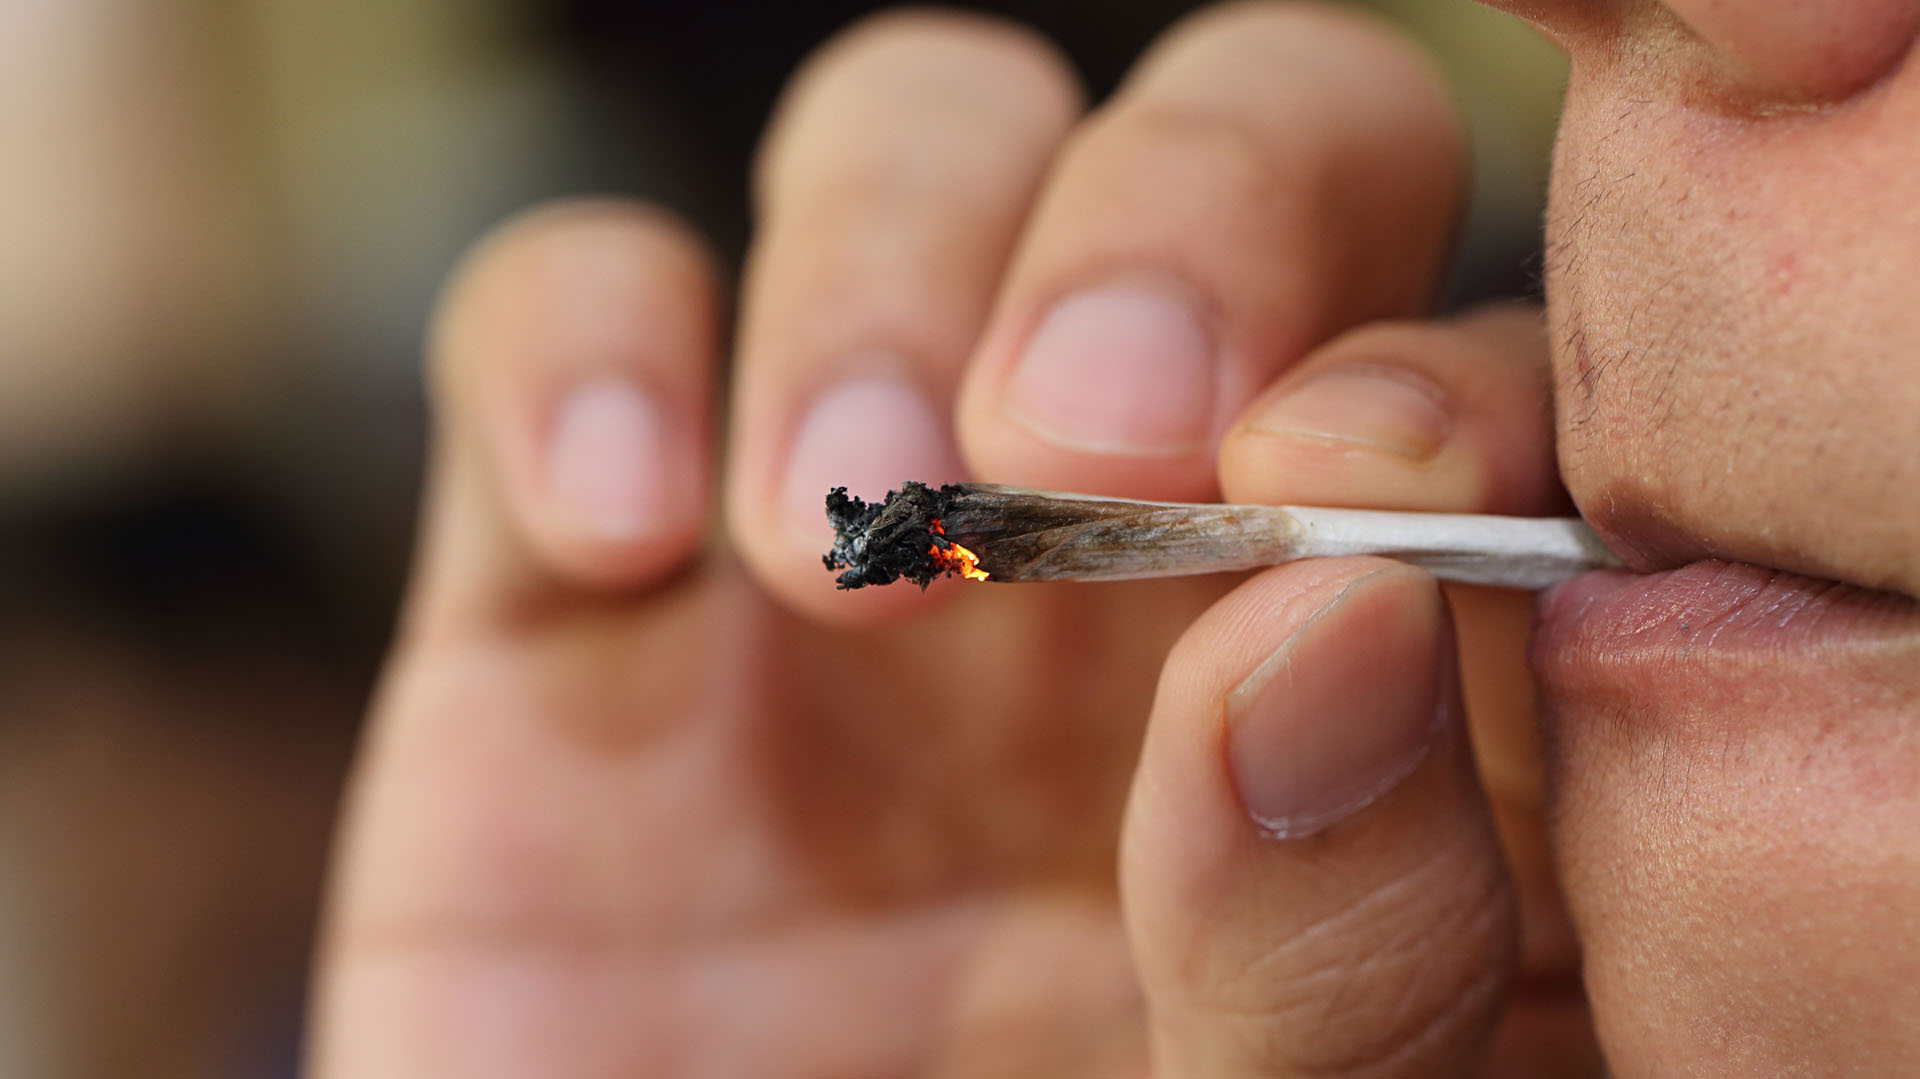 Consumir marihuana en la adolescencia y juventud provoca un daño cerebral irrecuperable, según varios estudios